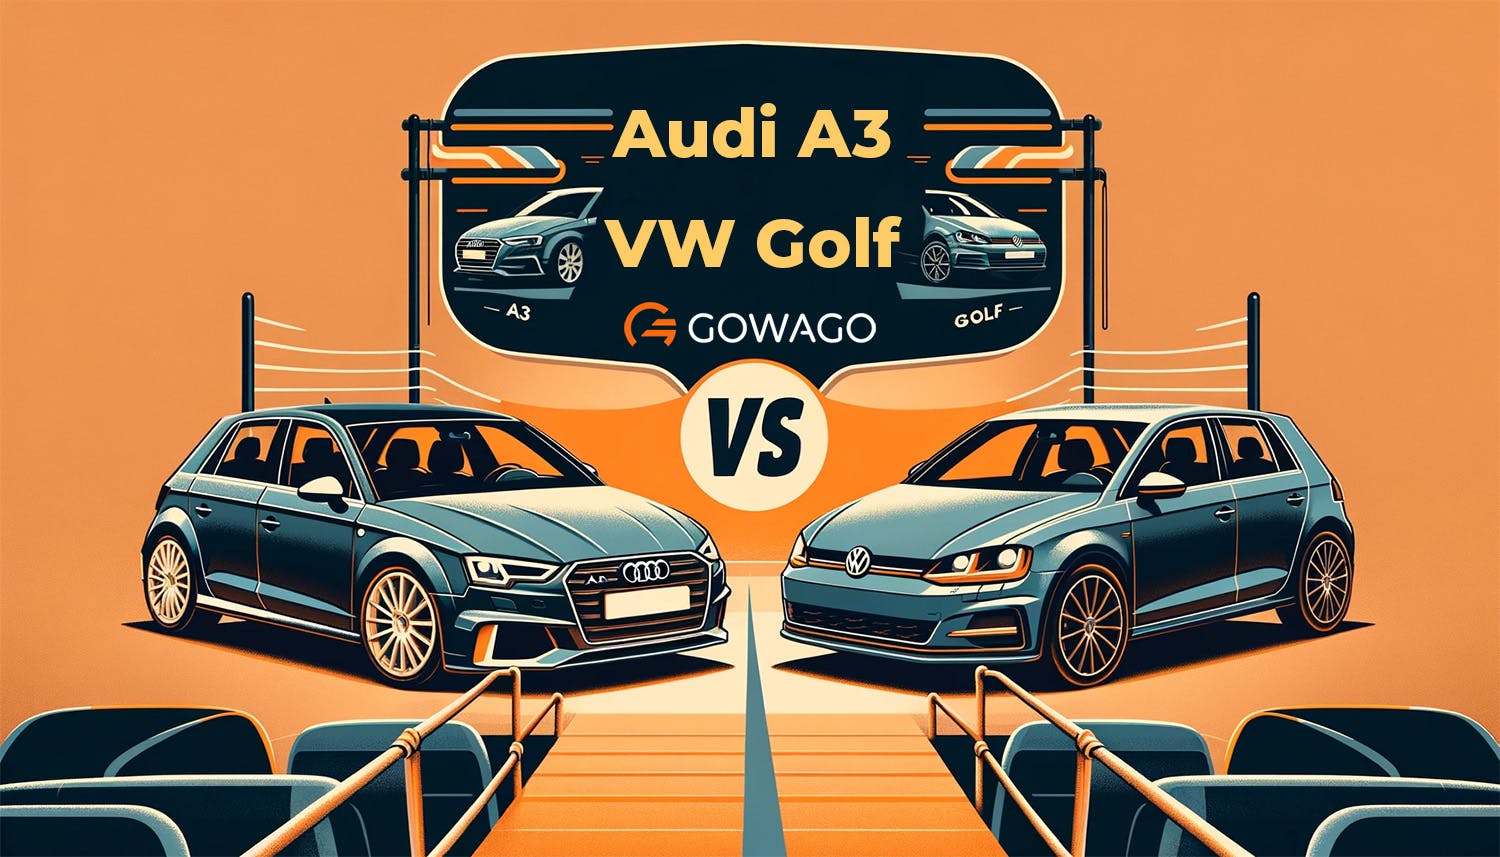 blog item card - Ein Vergleich zwischen dem Audi A3 und dem VW Golf - Welchen solltest du leasen? Möchtest du lieber Premium Sportlichkeit oder robuste Bodenständigkeit. gowago gibt dir die Antworten! 